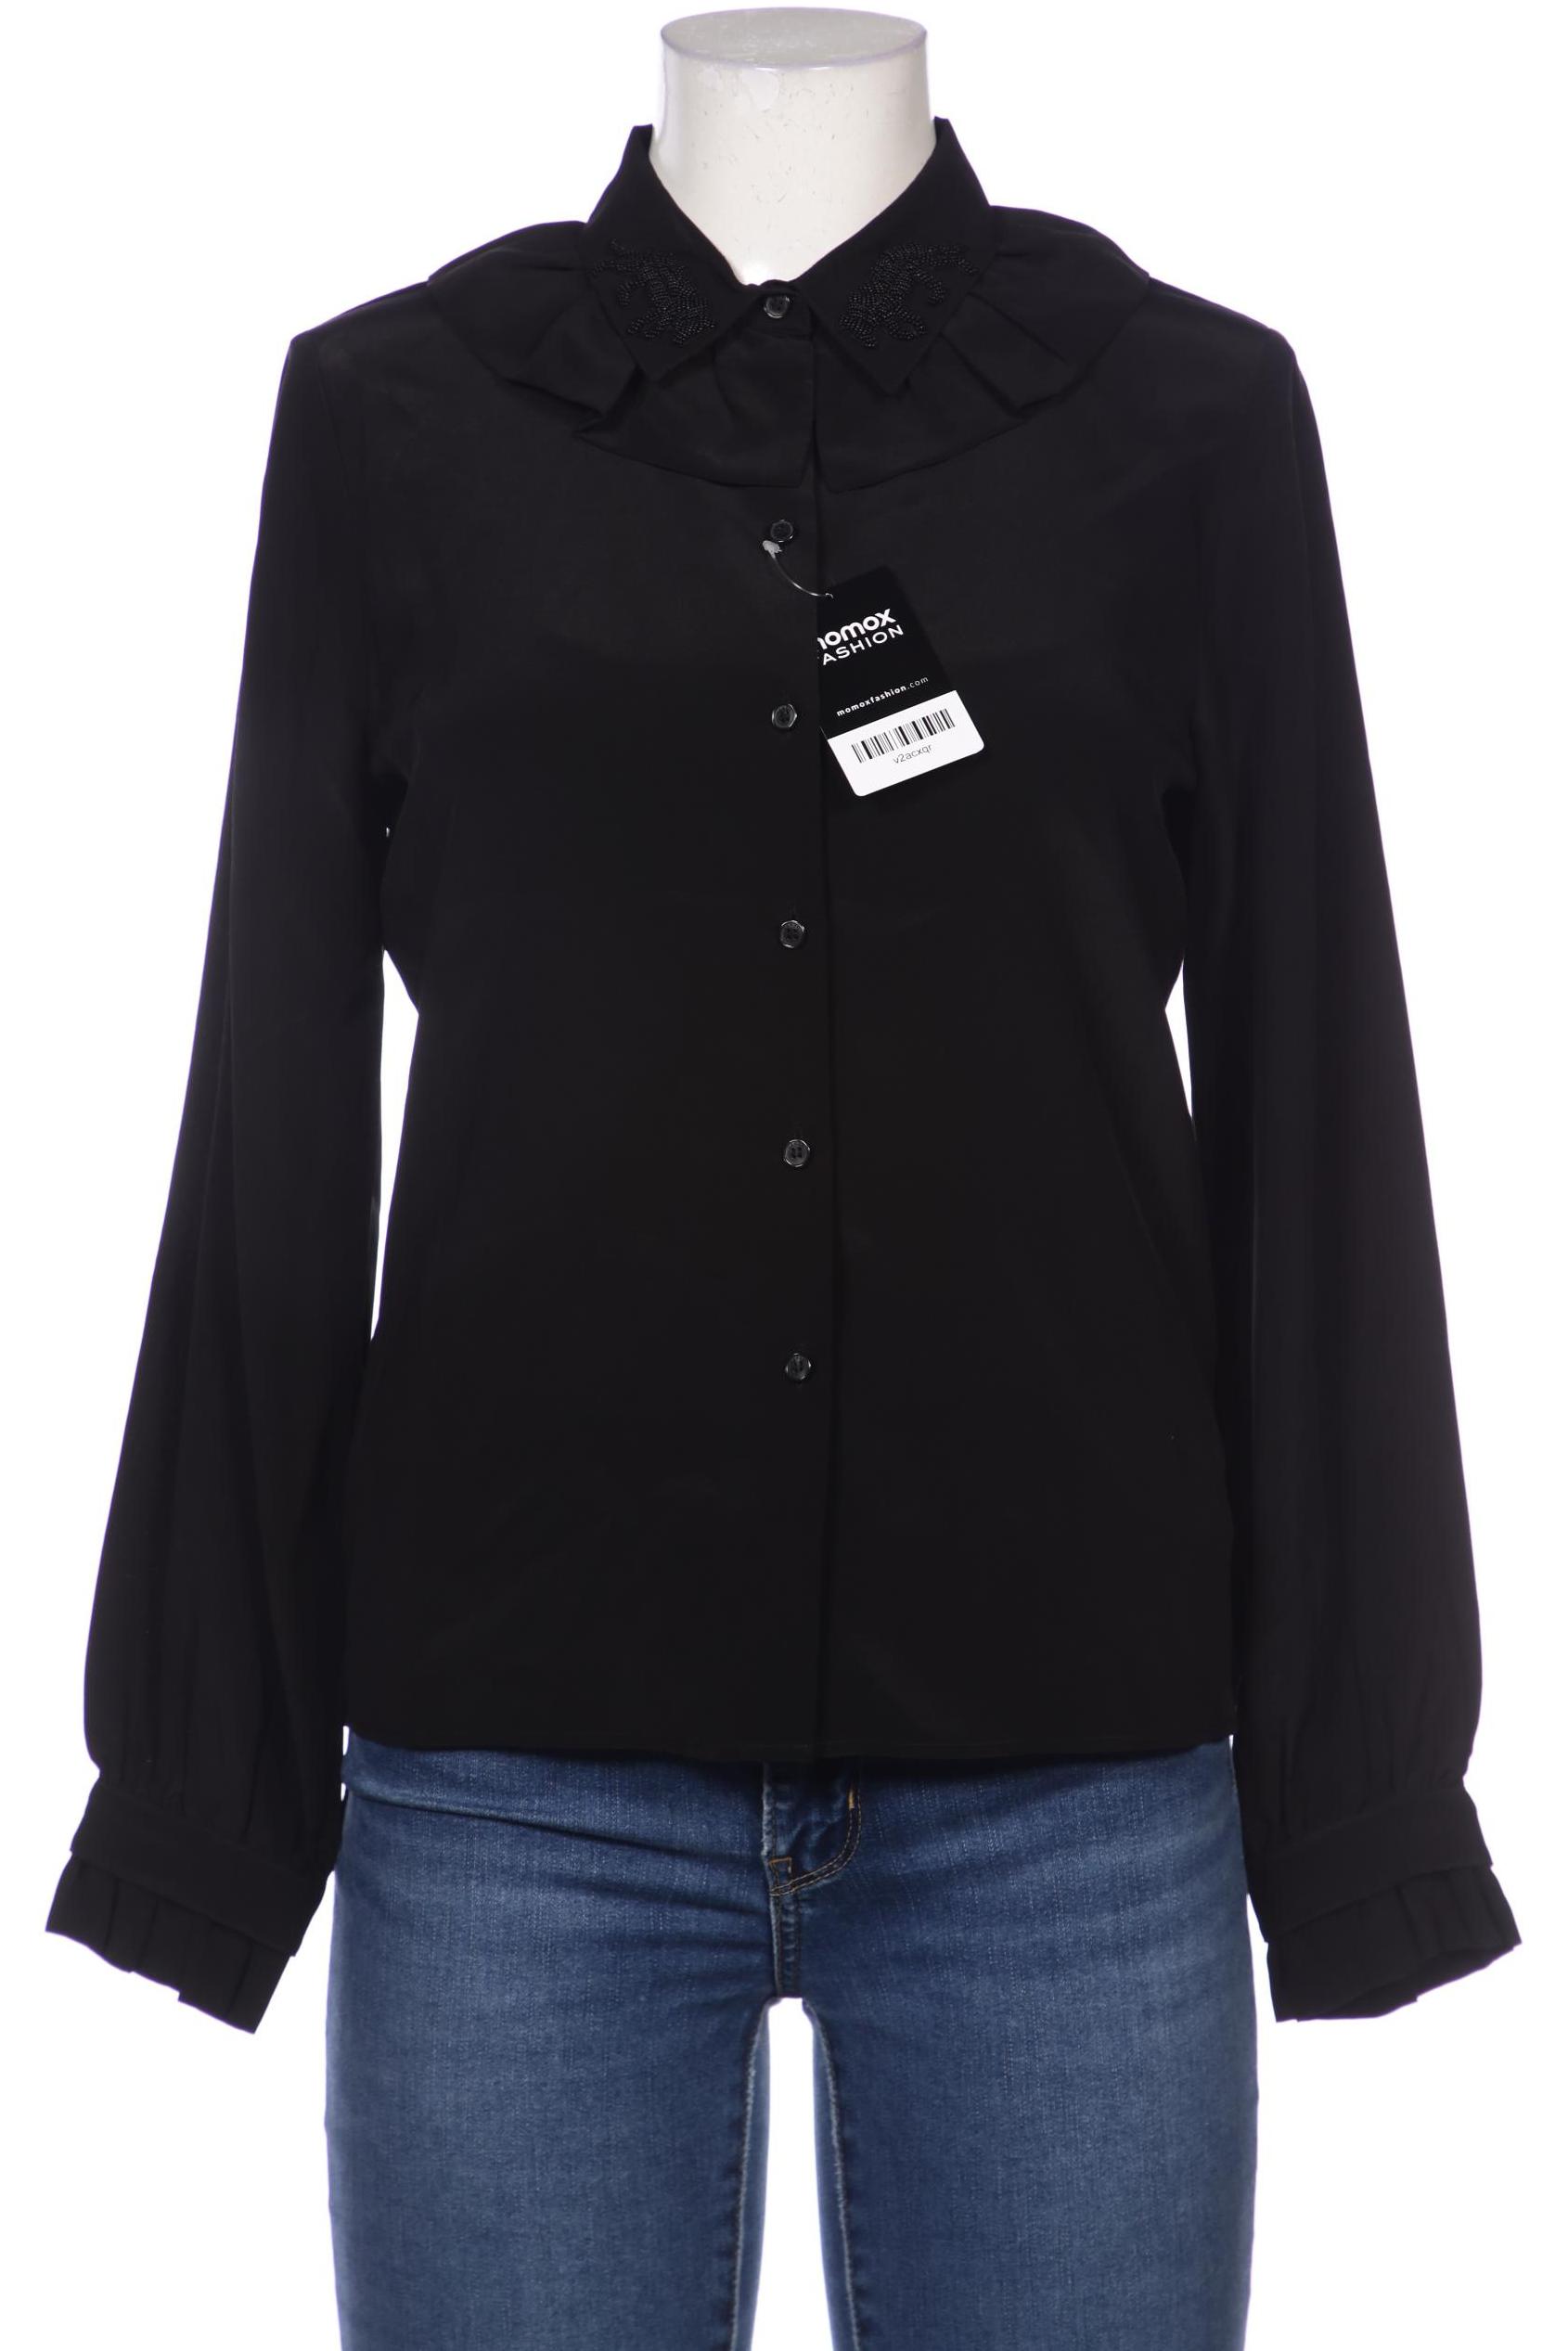 Kenzo x H&M Damen Bluse, schwarz, Gr. 36 von Kenzo x H&M